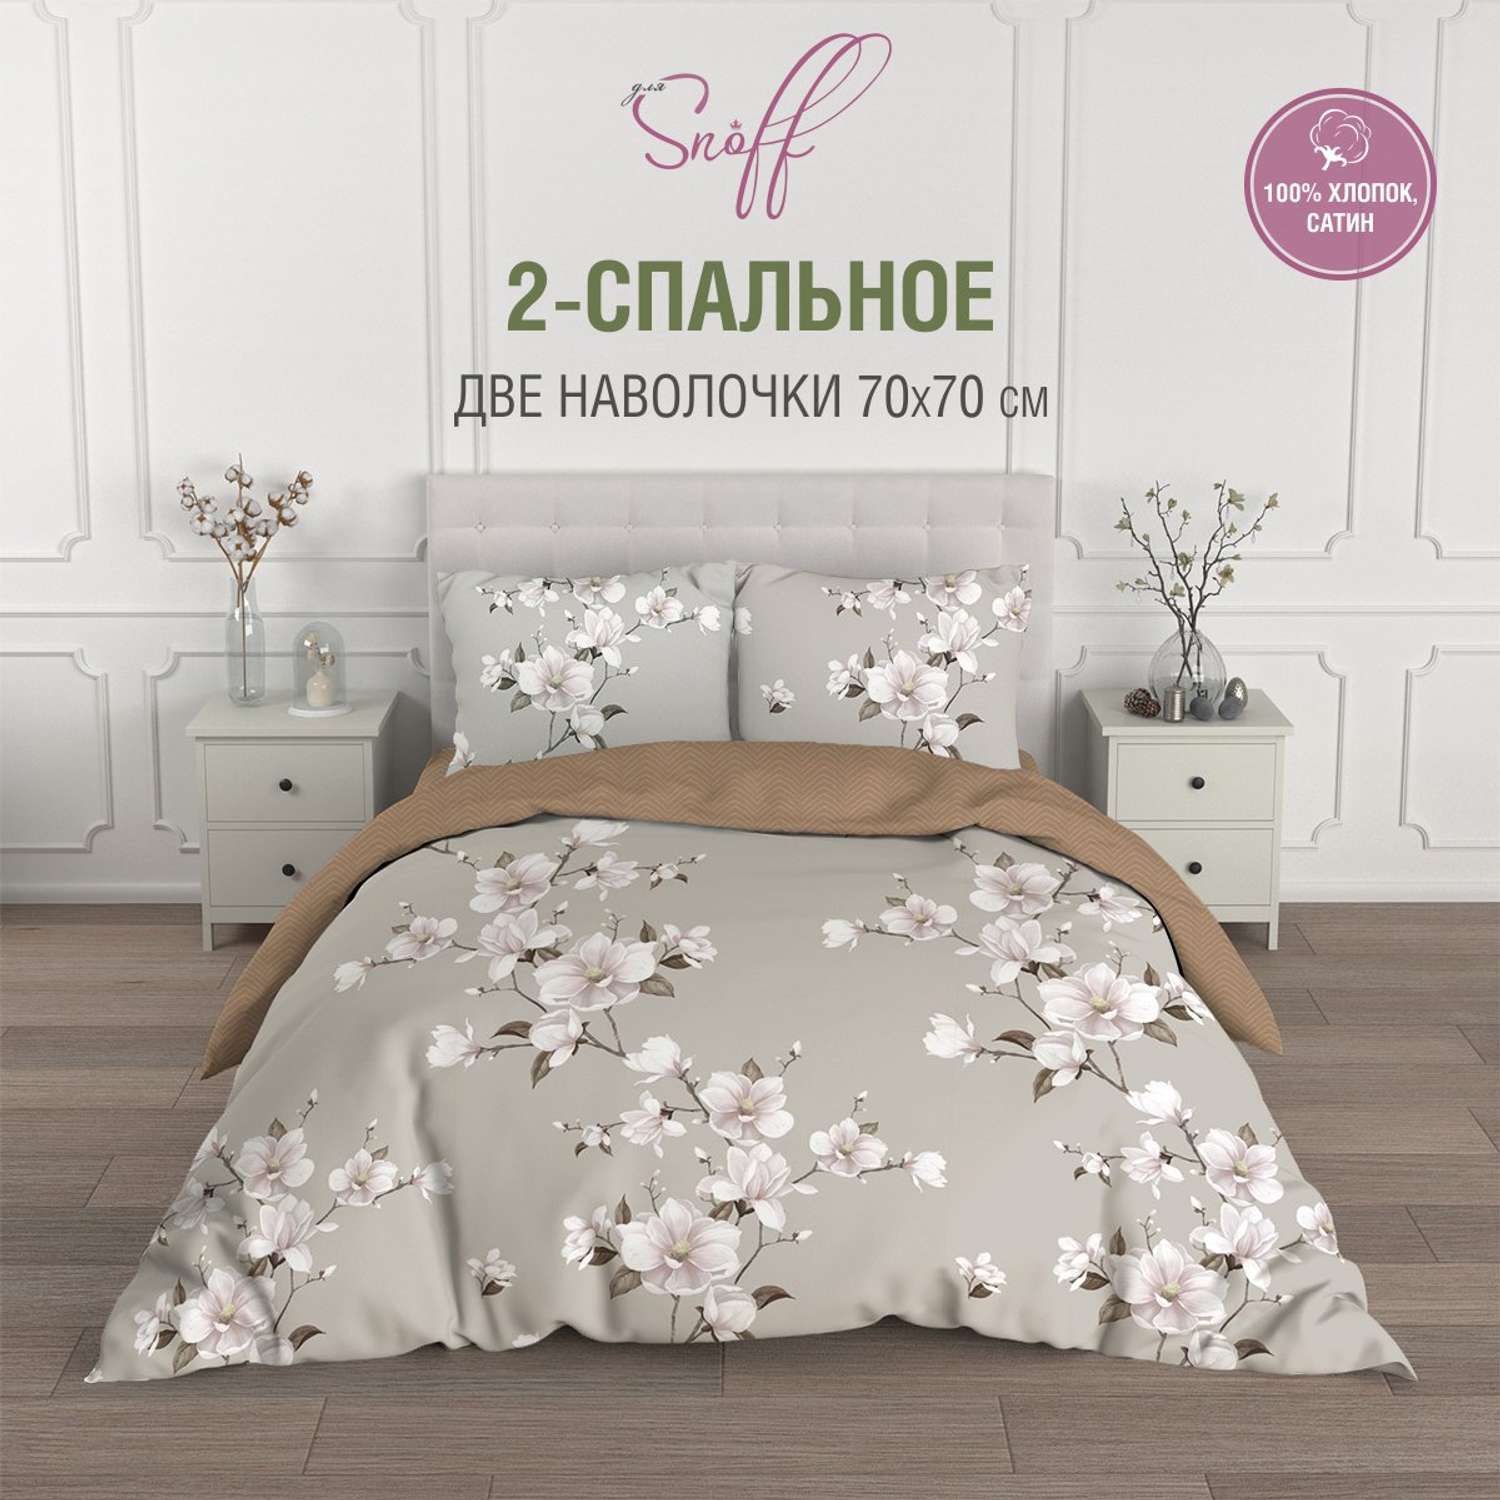 Комплект постельного белья для SNOFF Канела 2-спальный макси сатин рис.6084-1+6084а-1 - фото 2